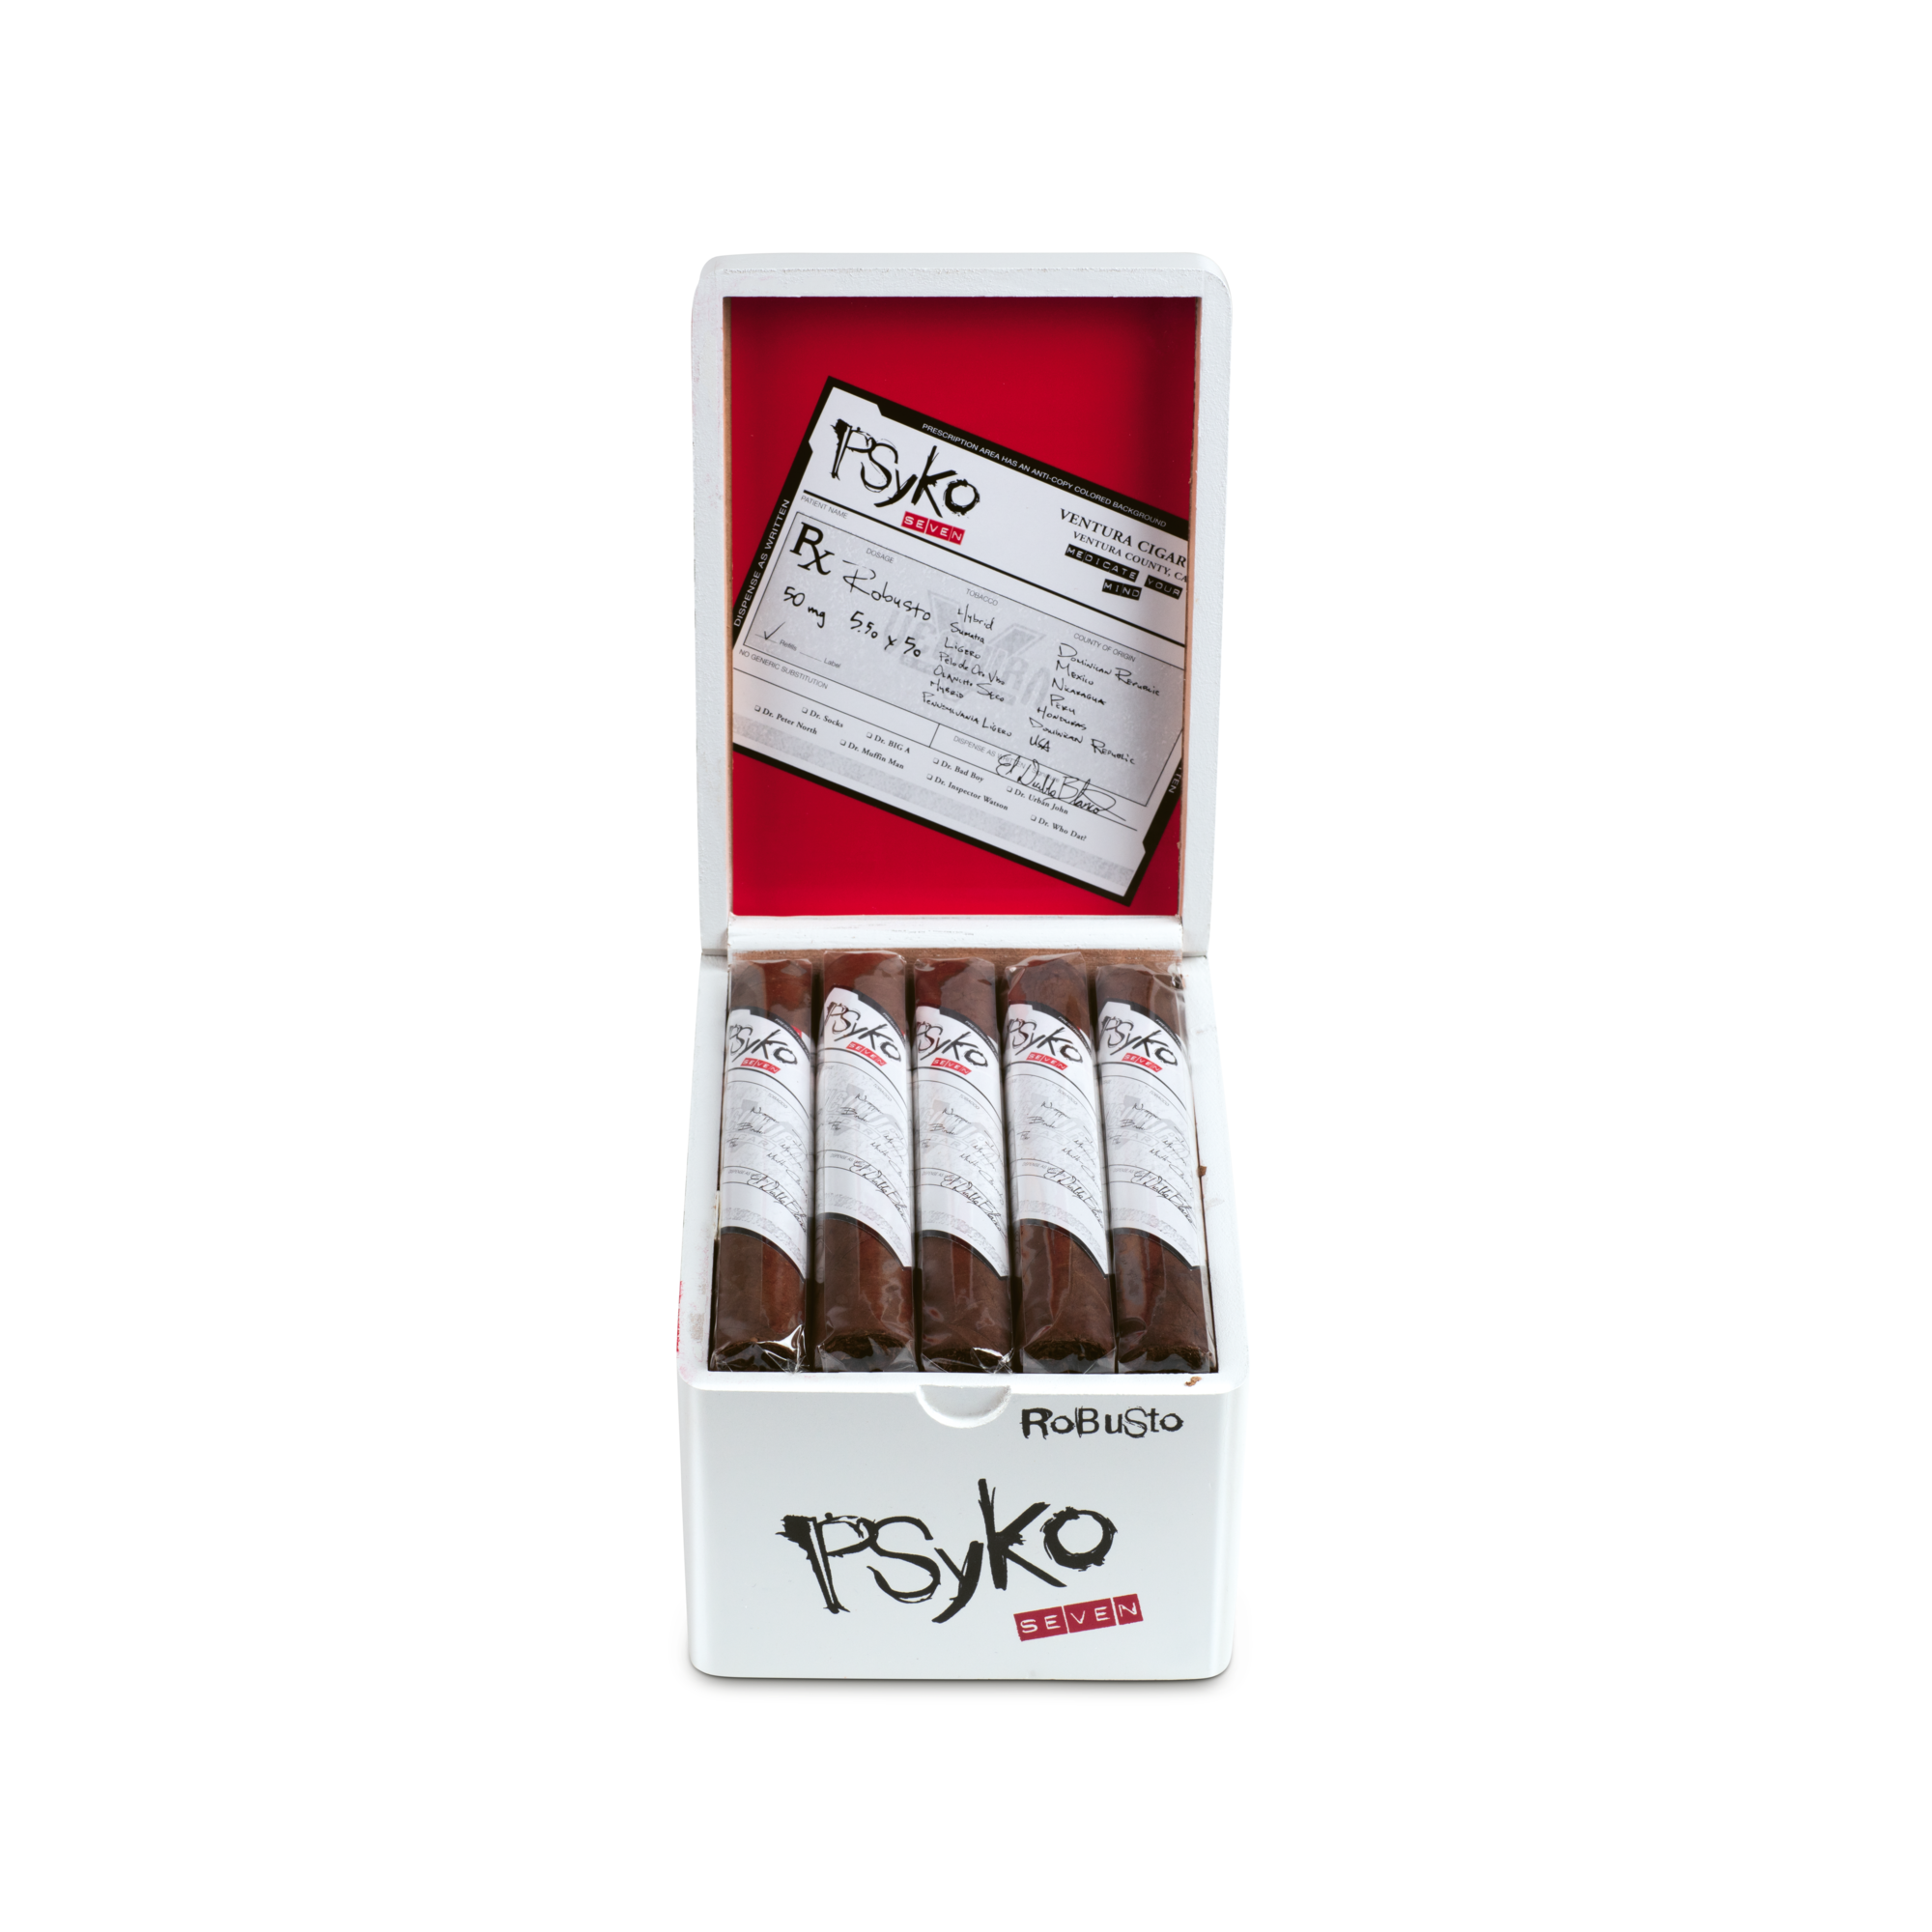 Psyko Seven Natural Robusto Zigarren Box geöffnet